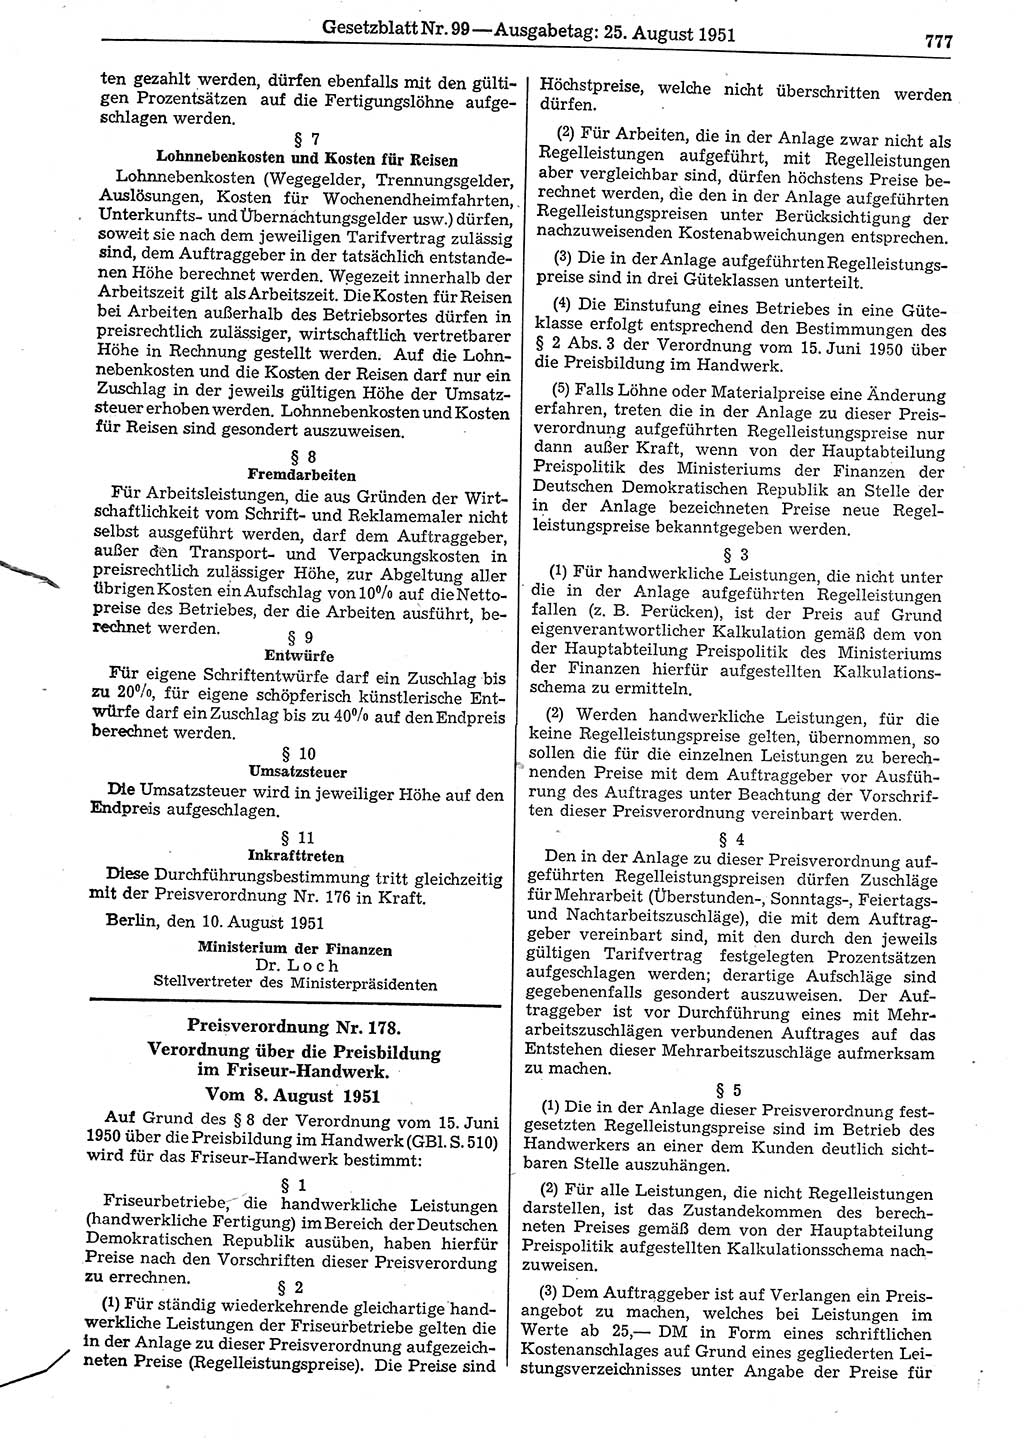 Gesetzblatt (GBl.) der Deutschen Demokratischen Republik (DDR) 1951, Seite 777 (GBl. DDR 1951, S. 777)